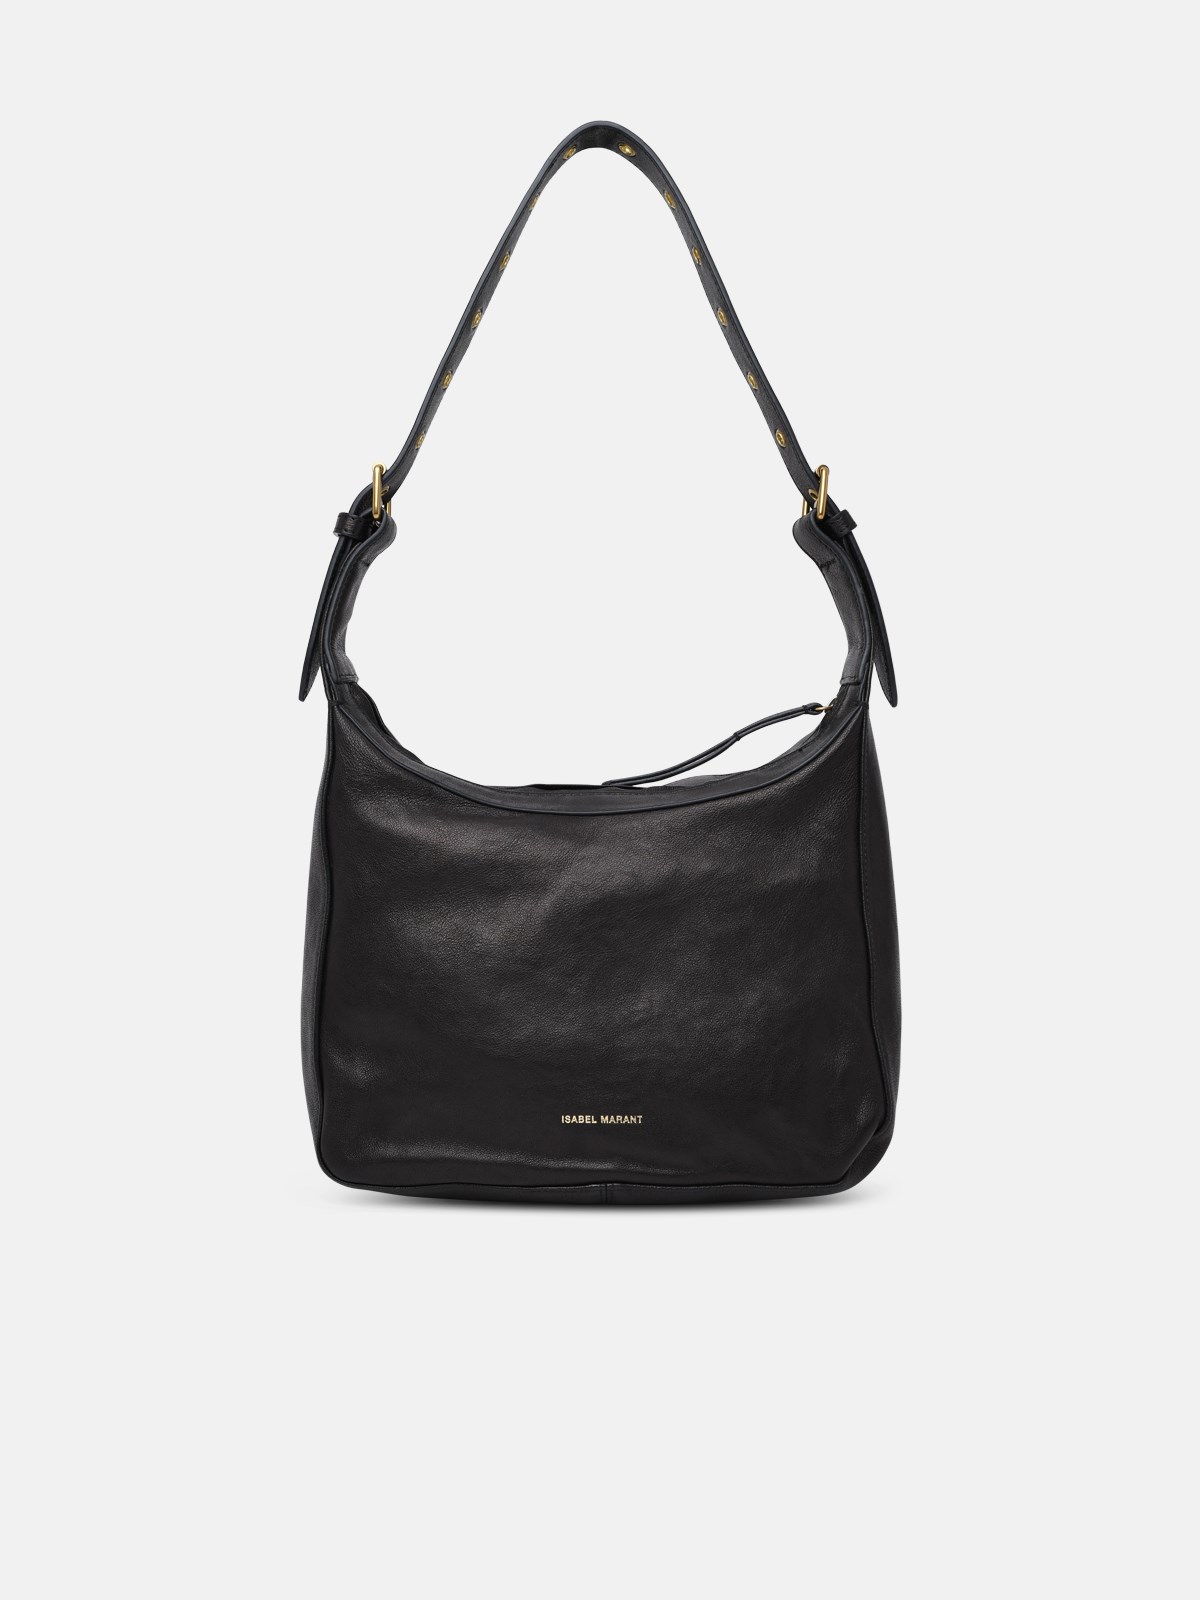 Isabel Marant Black Leather N50 Bag